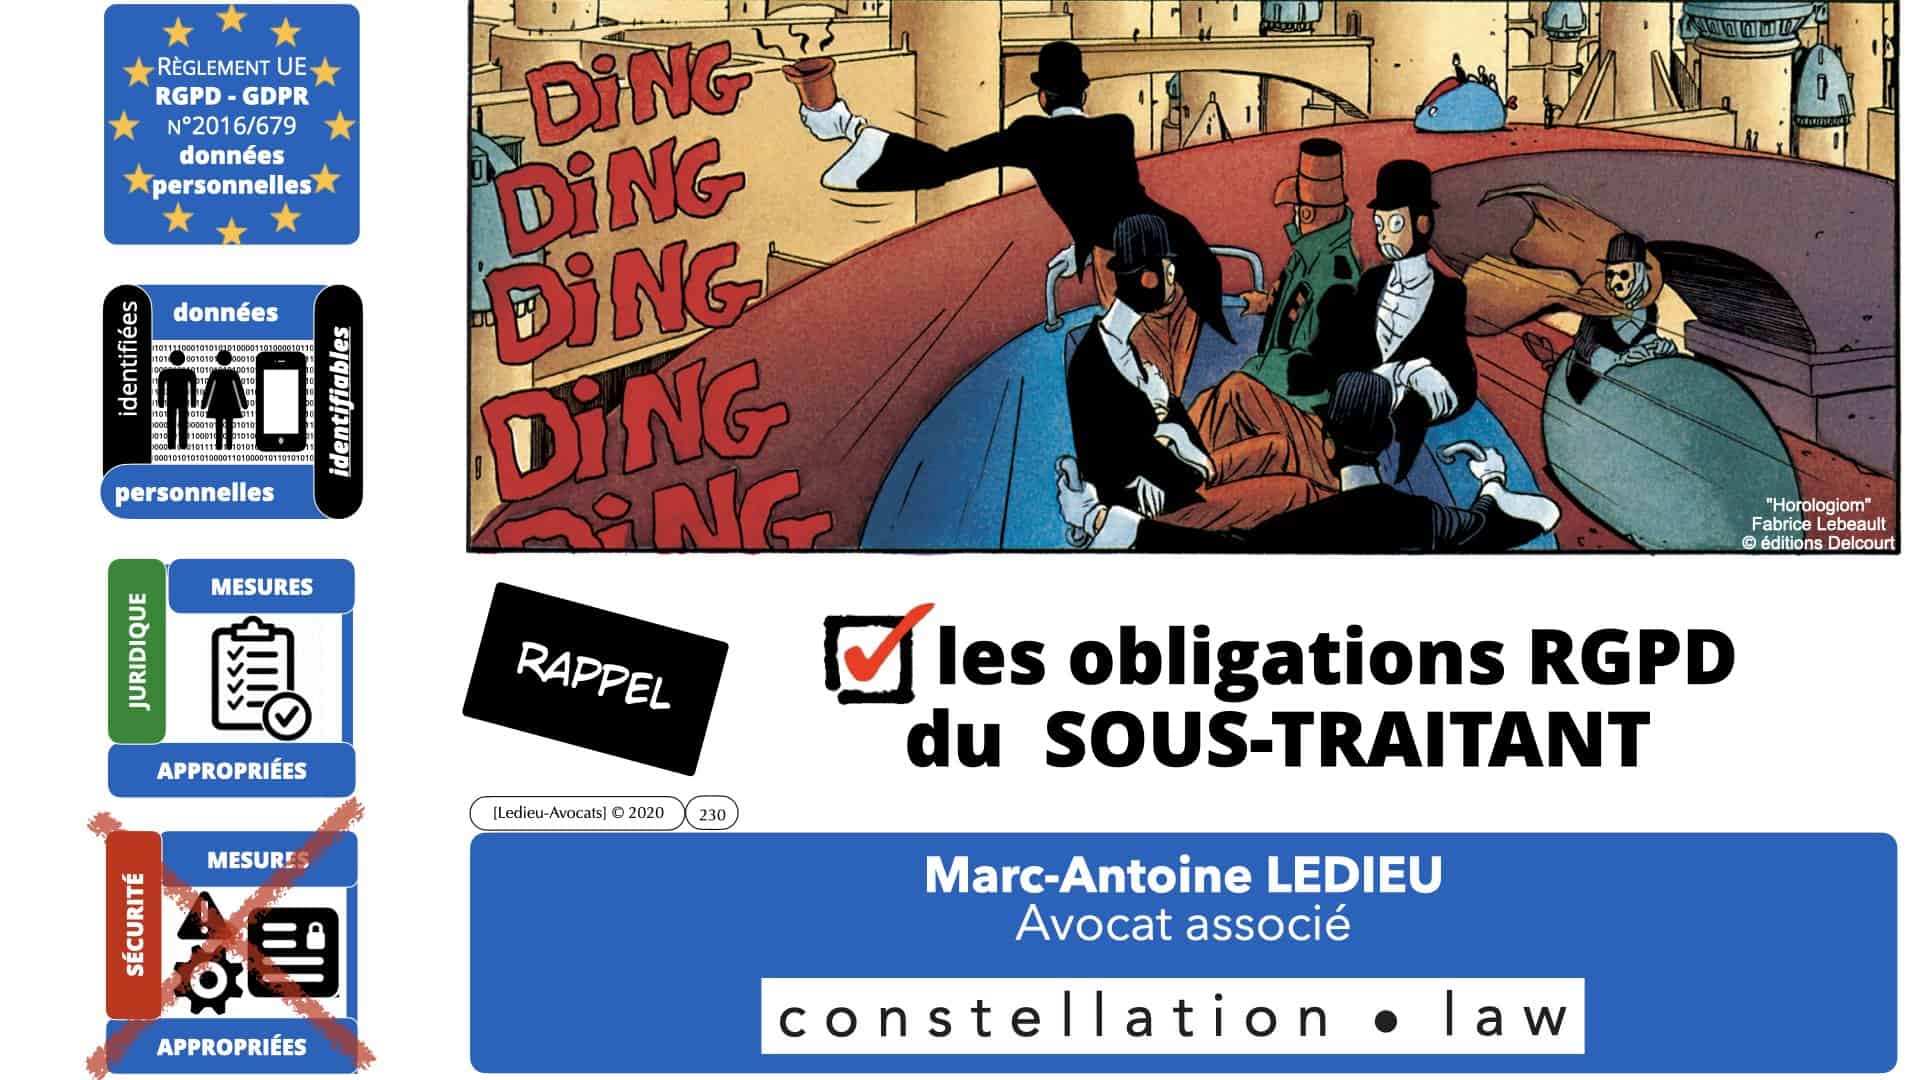 RGPD e-Privacy données personnelles jurisprudence formation Lamy Les Echos 10-02-2021 ©Ledieu-Avocats.230